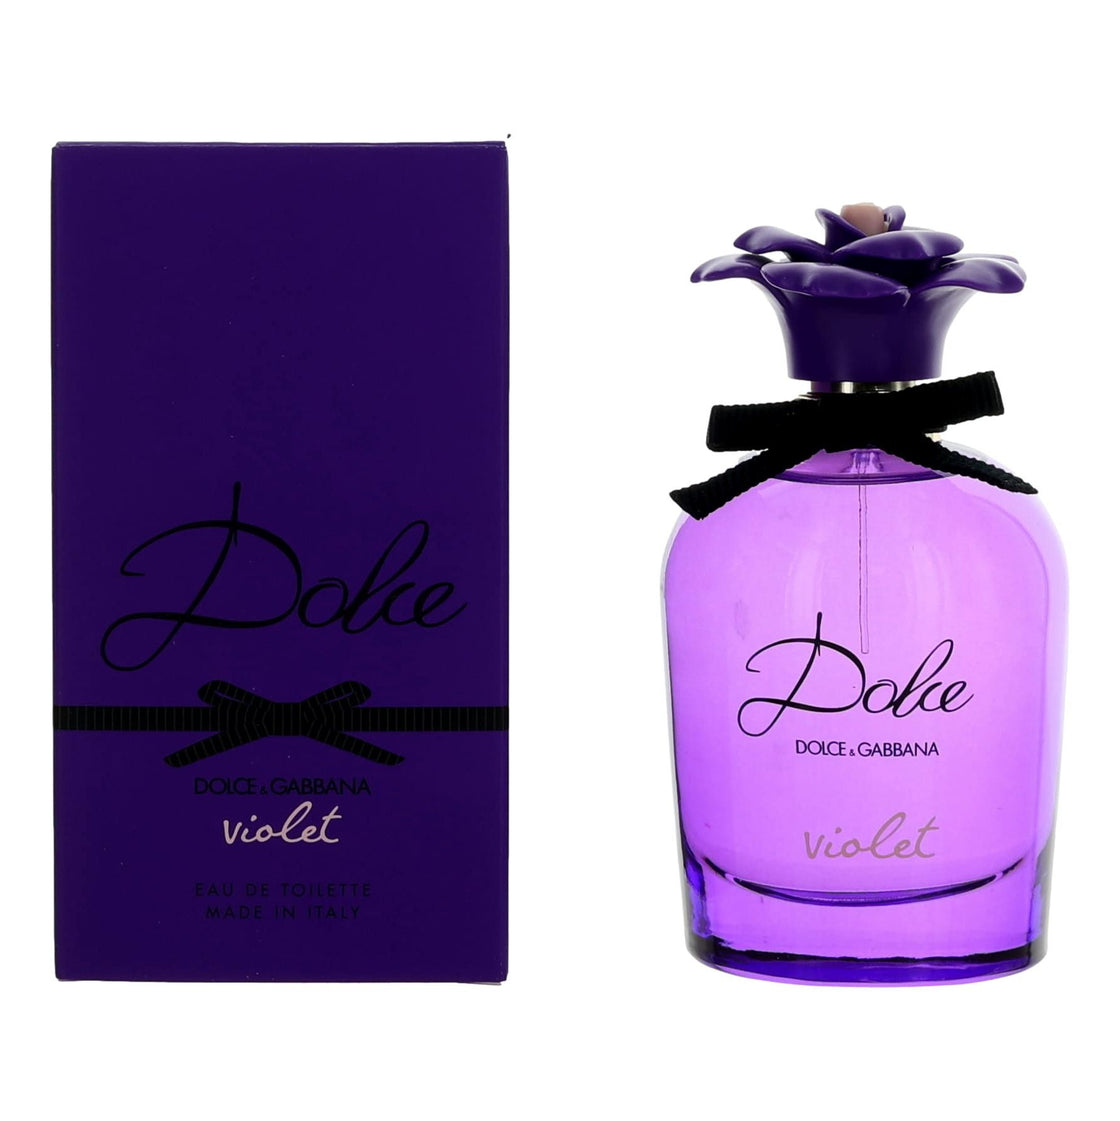 Dolce Violet By Dolce & Gabbana, 2.5 Oz Eau De Toilette Spray For Women